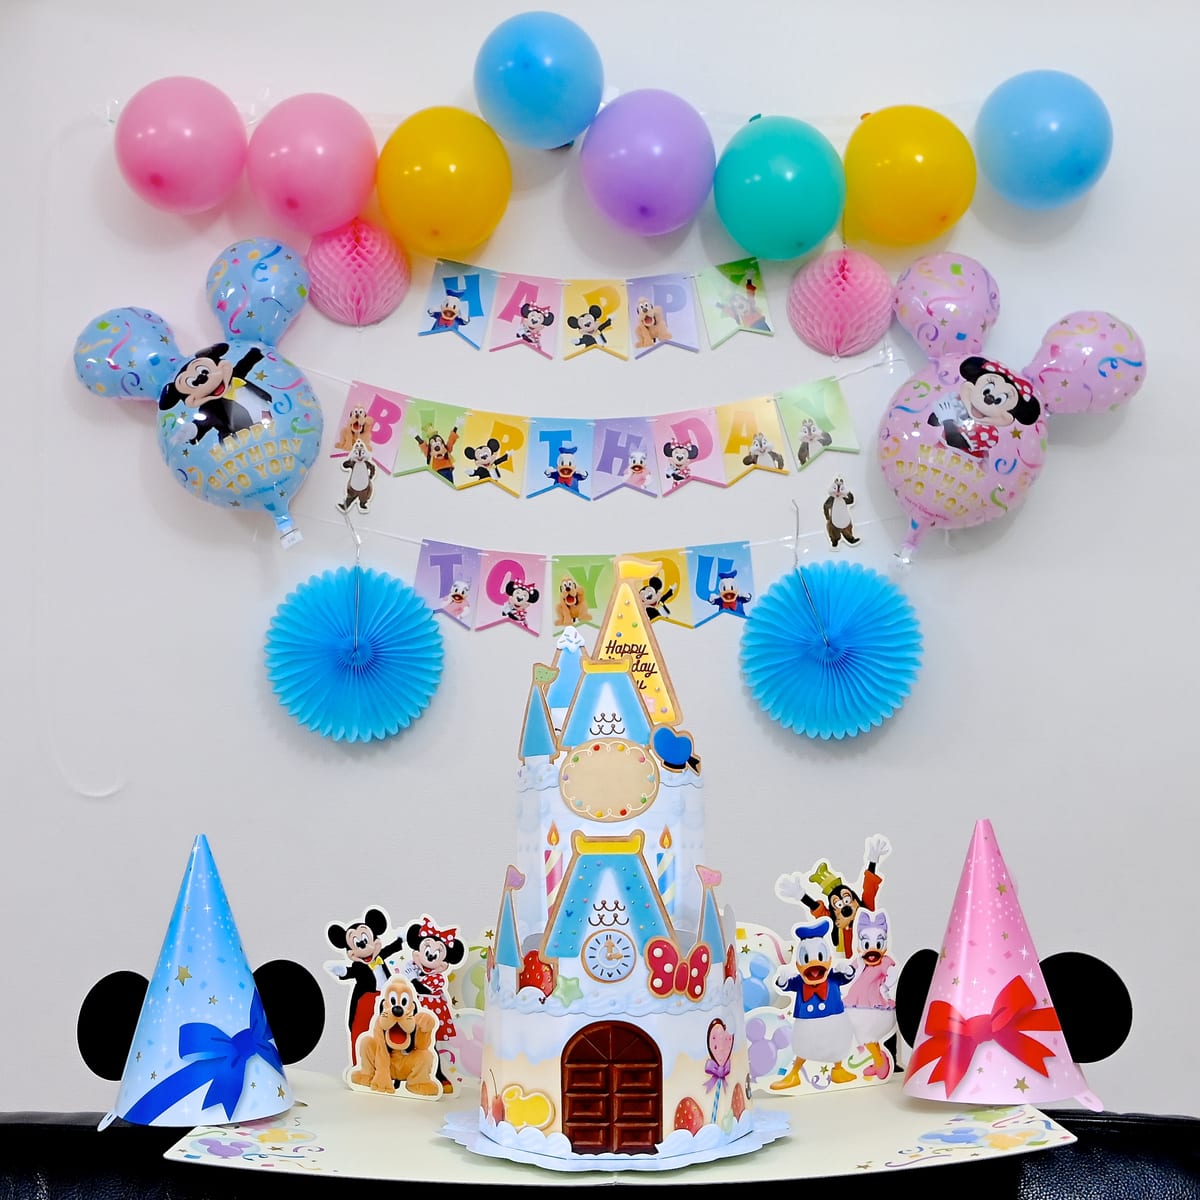 東京ディズニーリゾート「Disney Birthday @Home」デコレーションキット